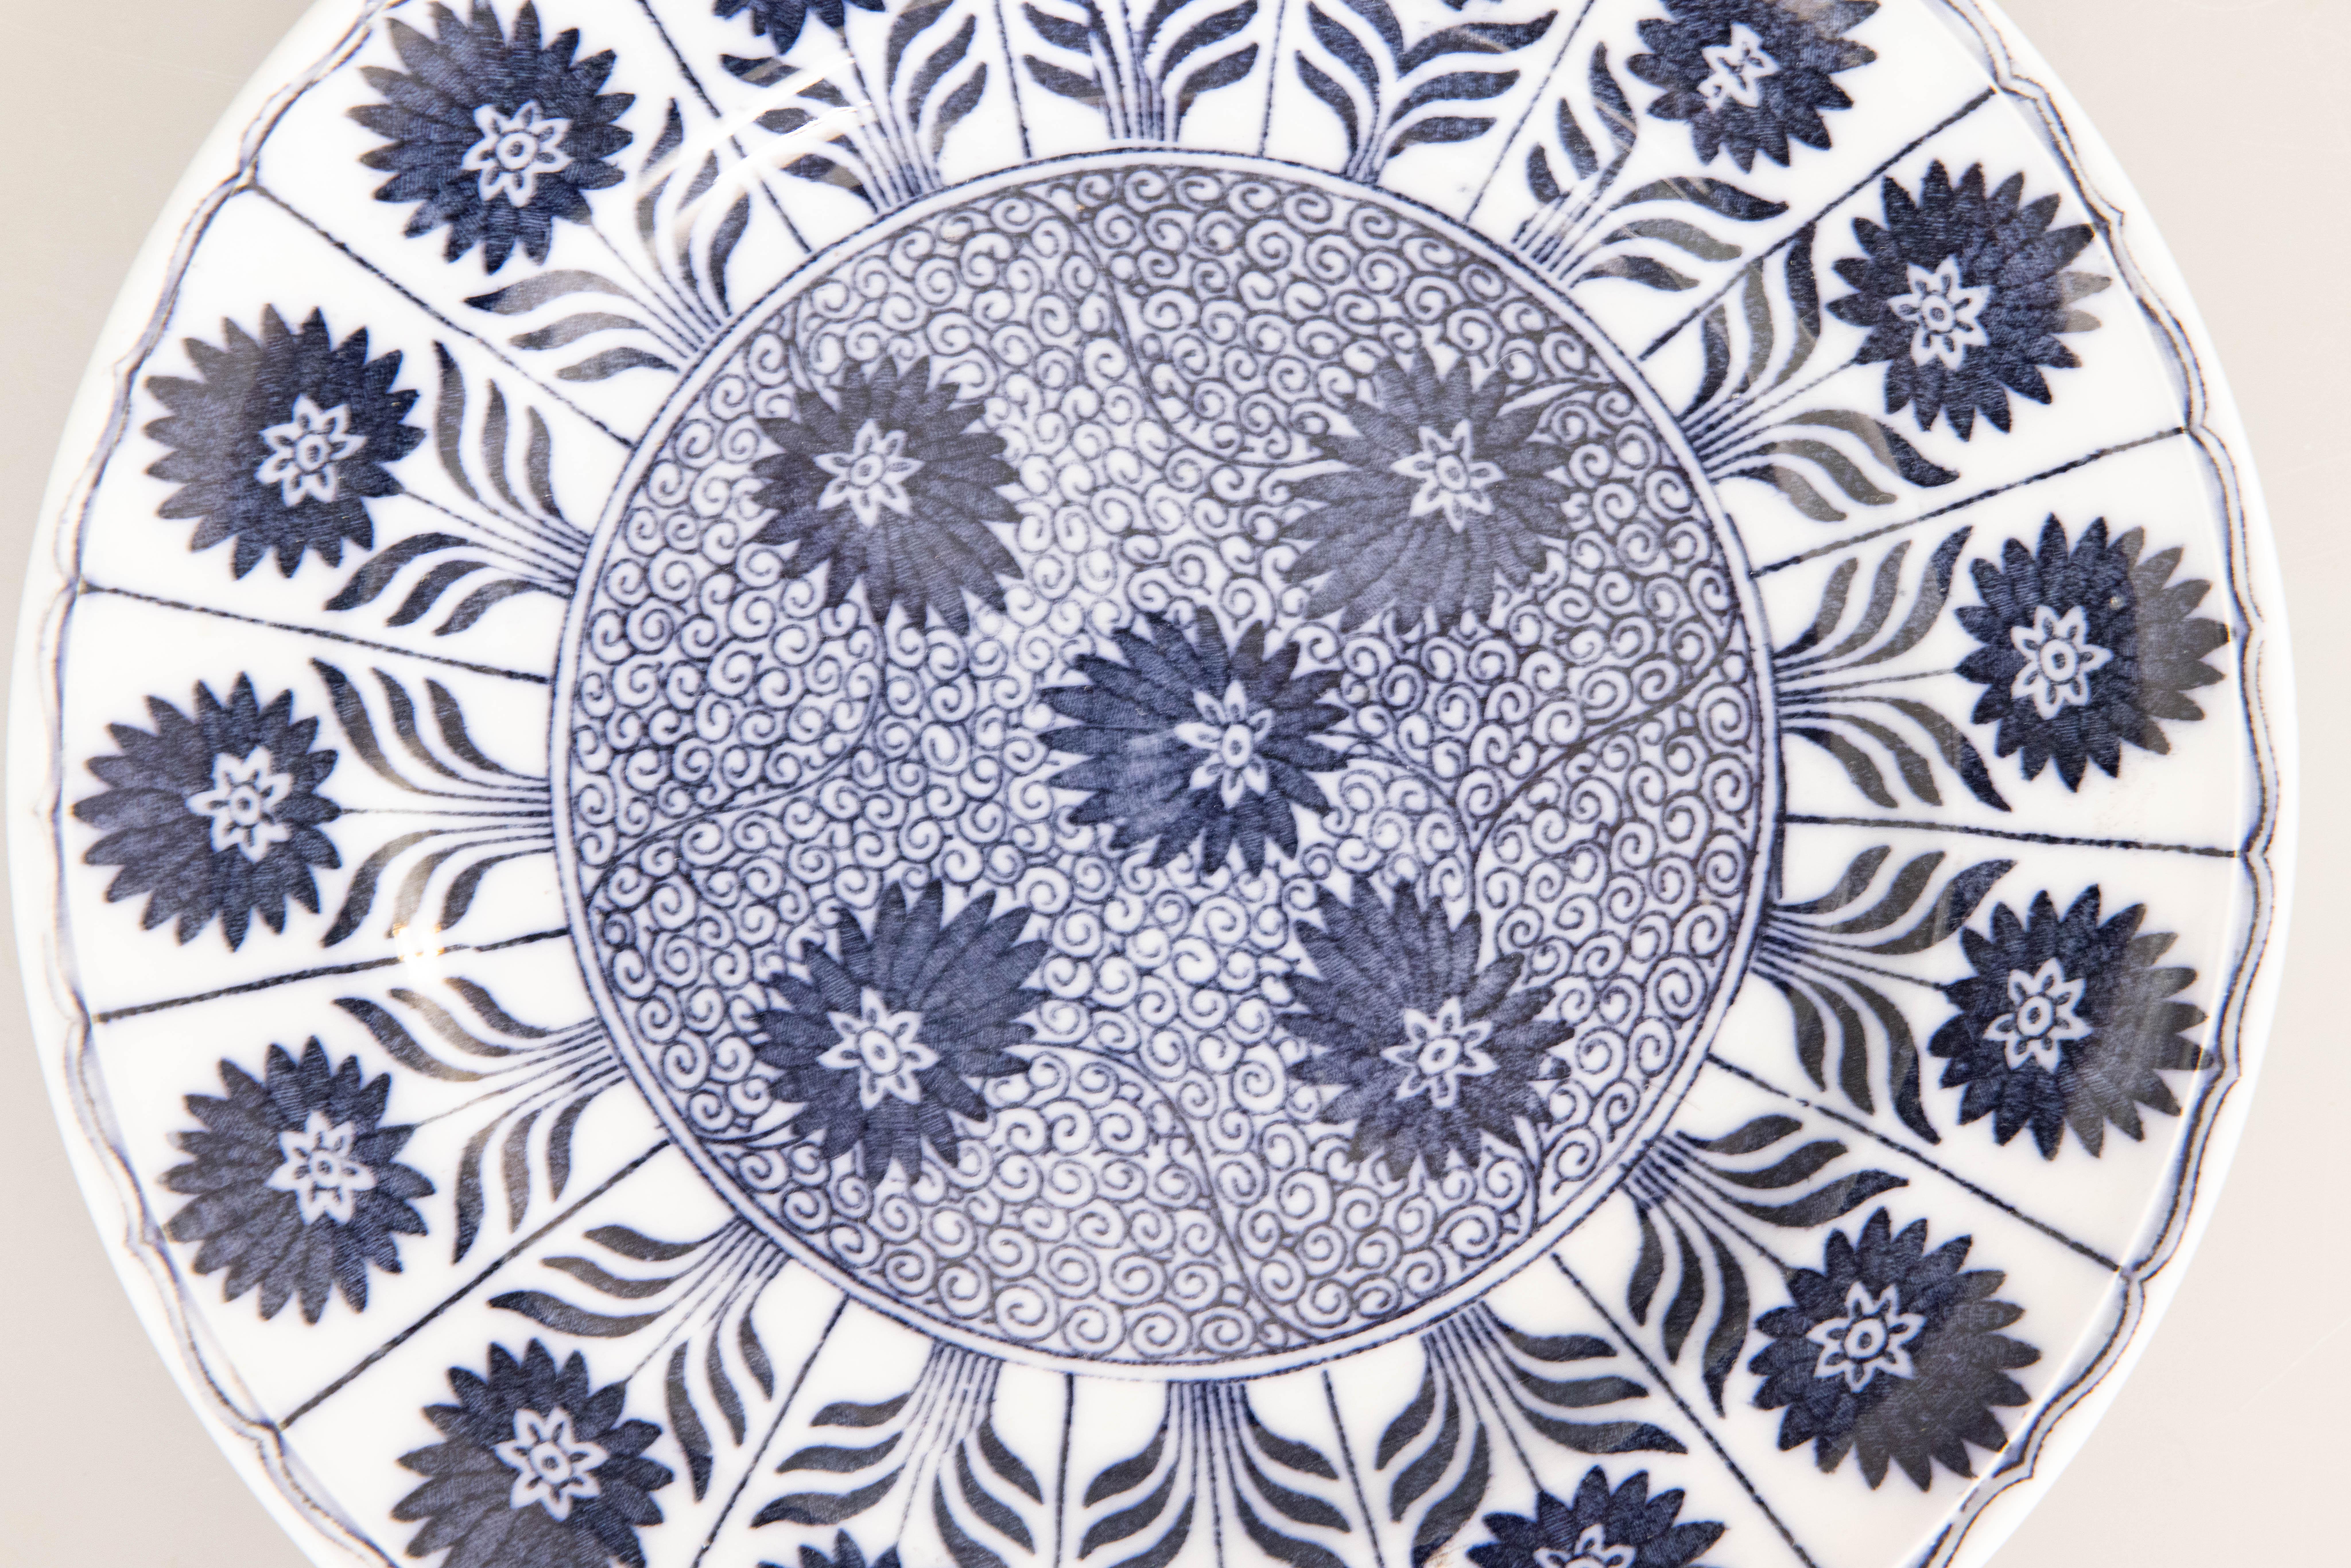 Ravissante assiette florale en porcelaine de transfert bleue de Minton, vers 1880. Marque du fabricant au revers. Minton était une importante fabrique anglaise de poterie et de porcelaine créée par Thomas Minton en 1793 à Stoke-upon-Trent, dans le